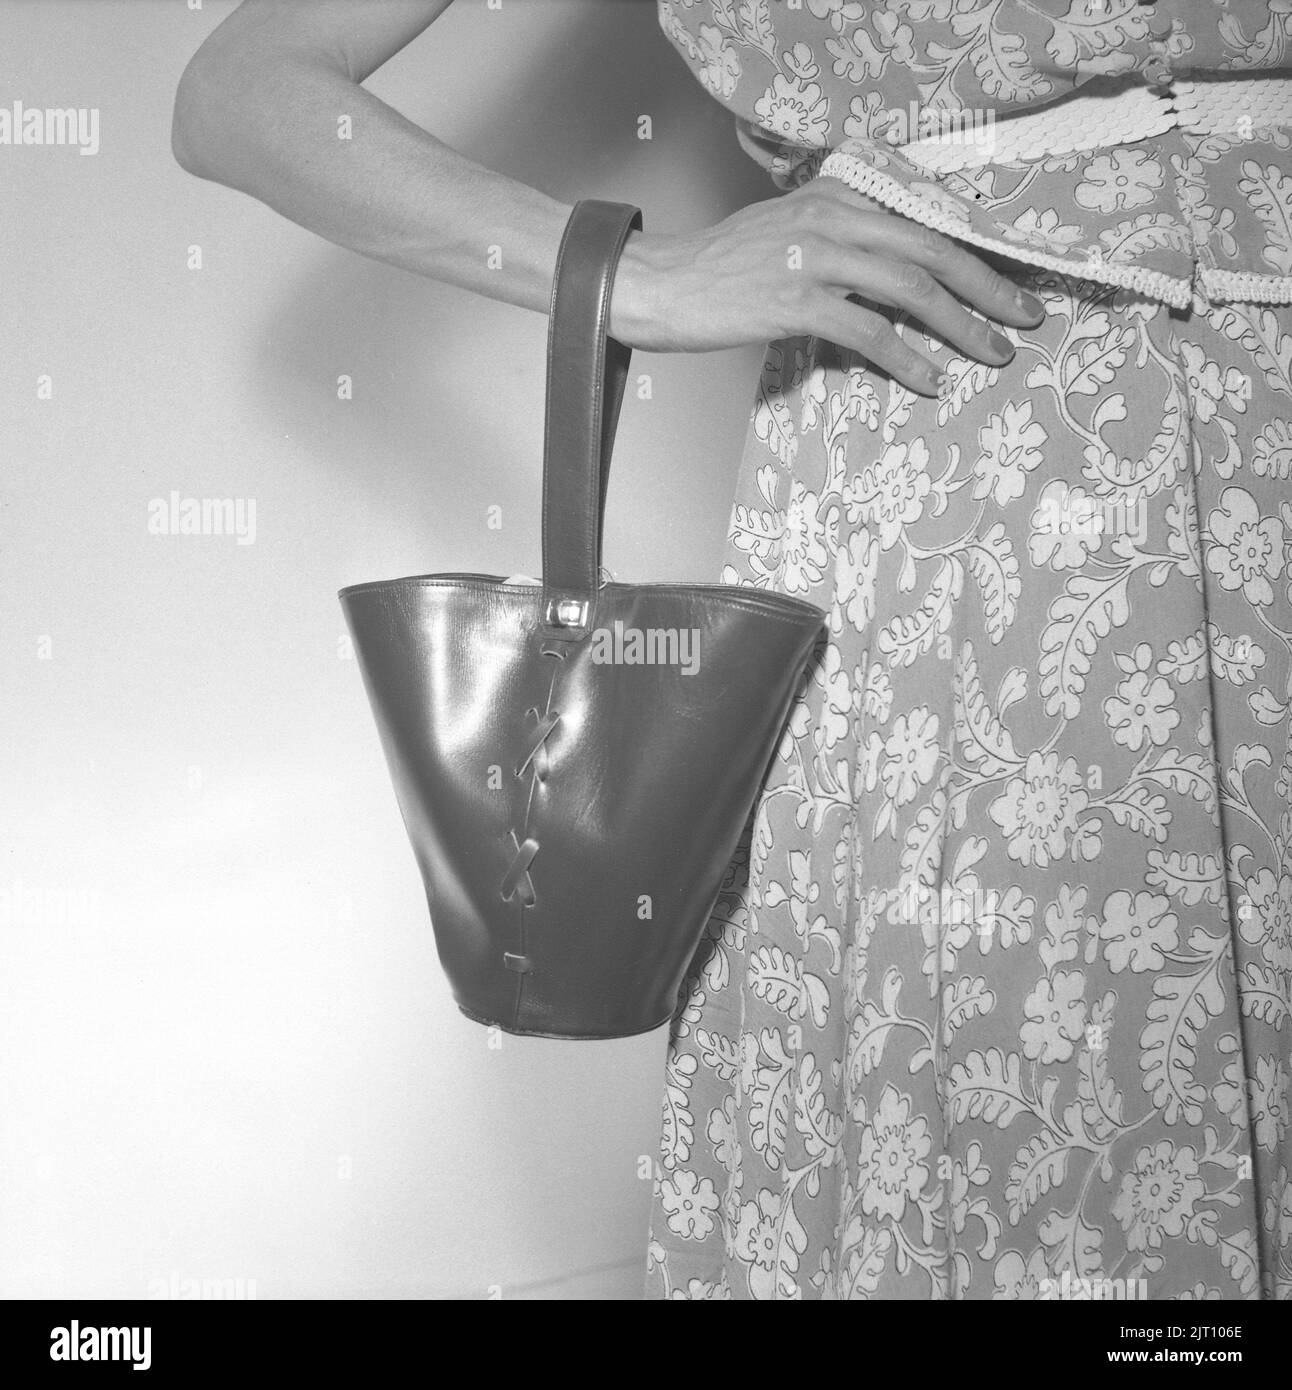 La mode des femmes en 1950s. Une jeune femme avec un sac à main dans la conception de l'année 1952, présenté à un salon comme la dernière en mode sac à main. Suède 1952 Conard réf. 2112 Banque D'Images